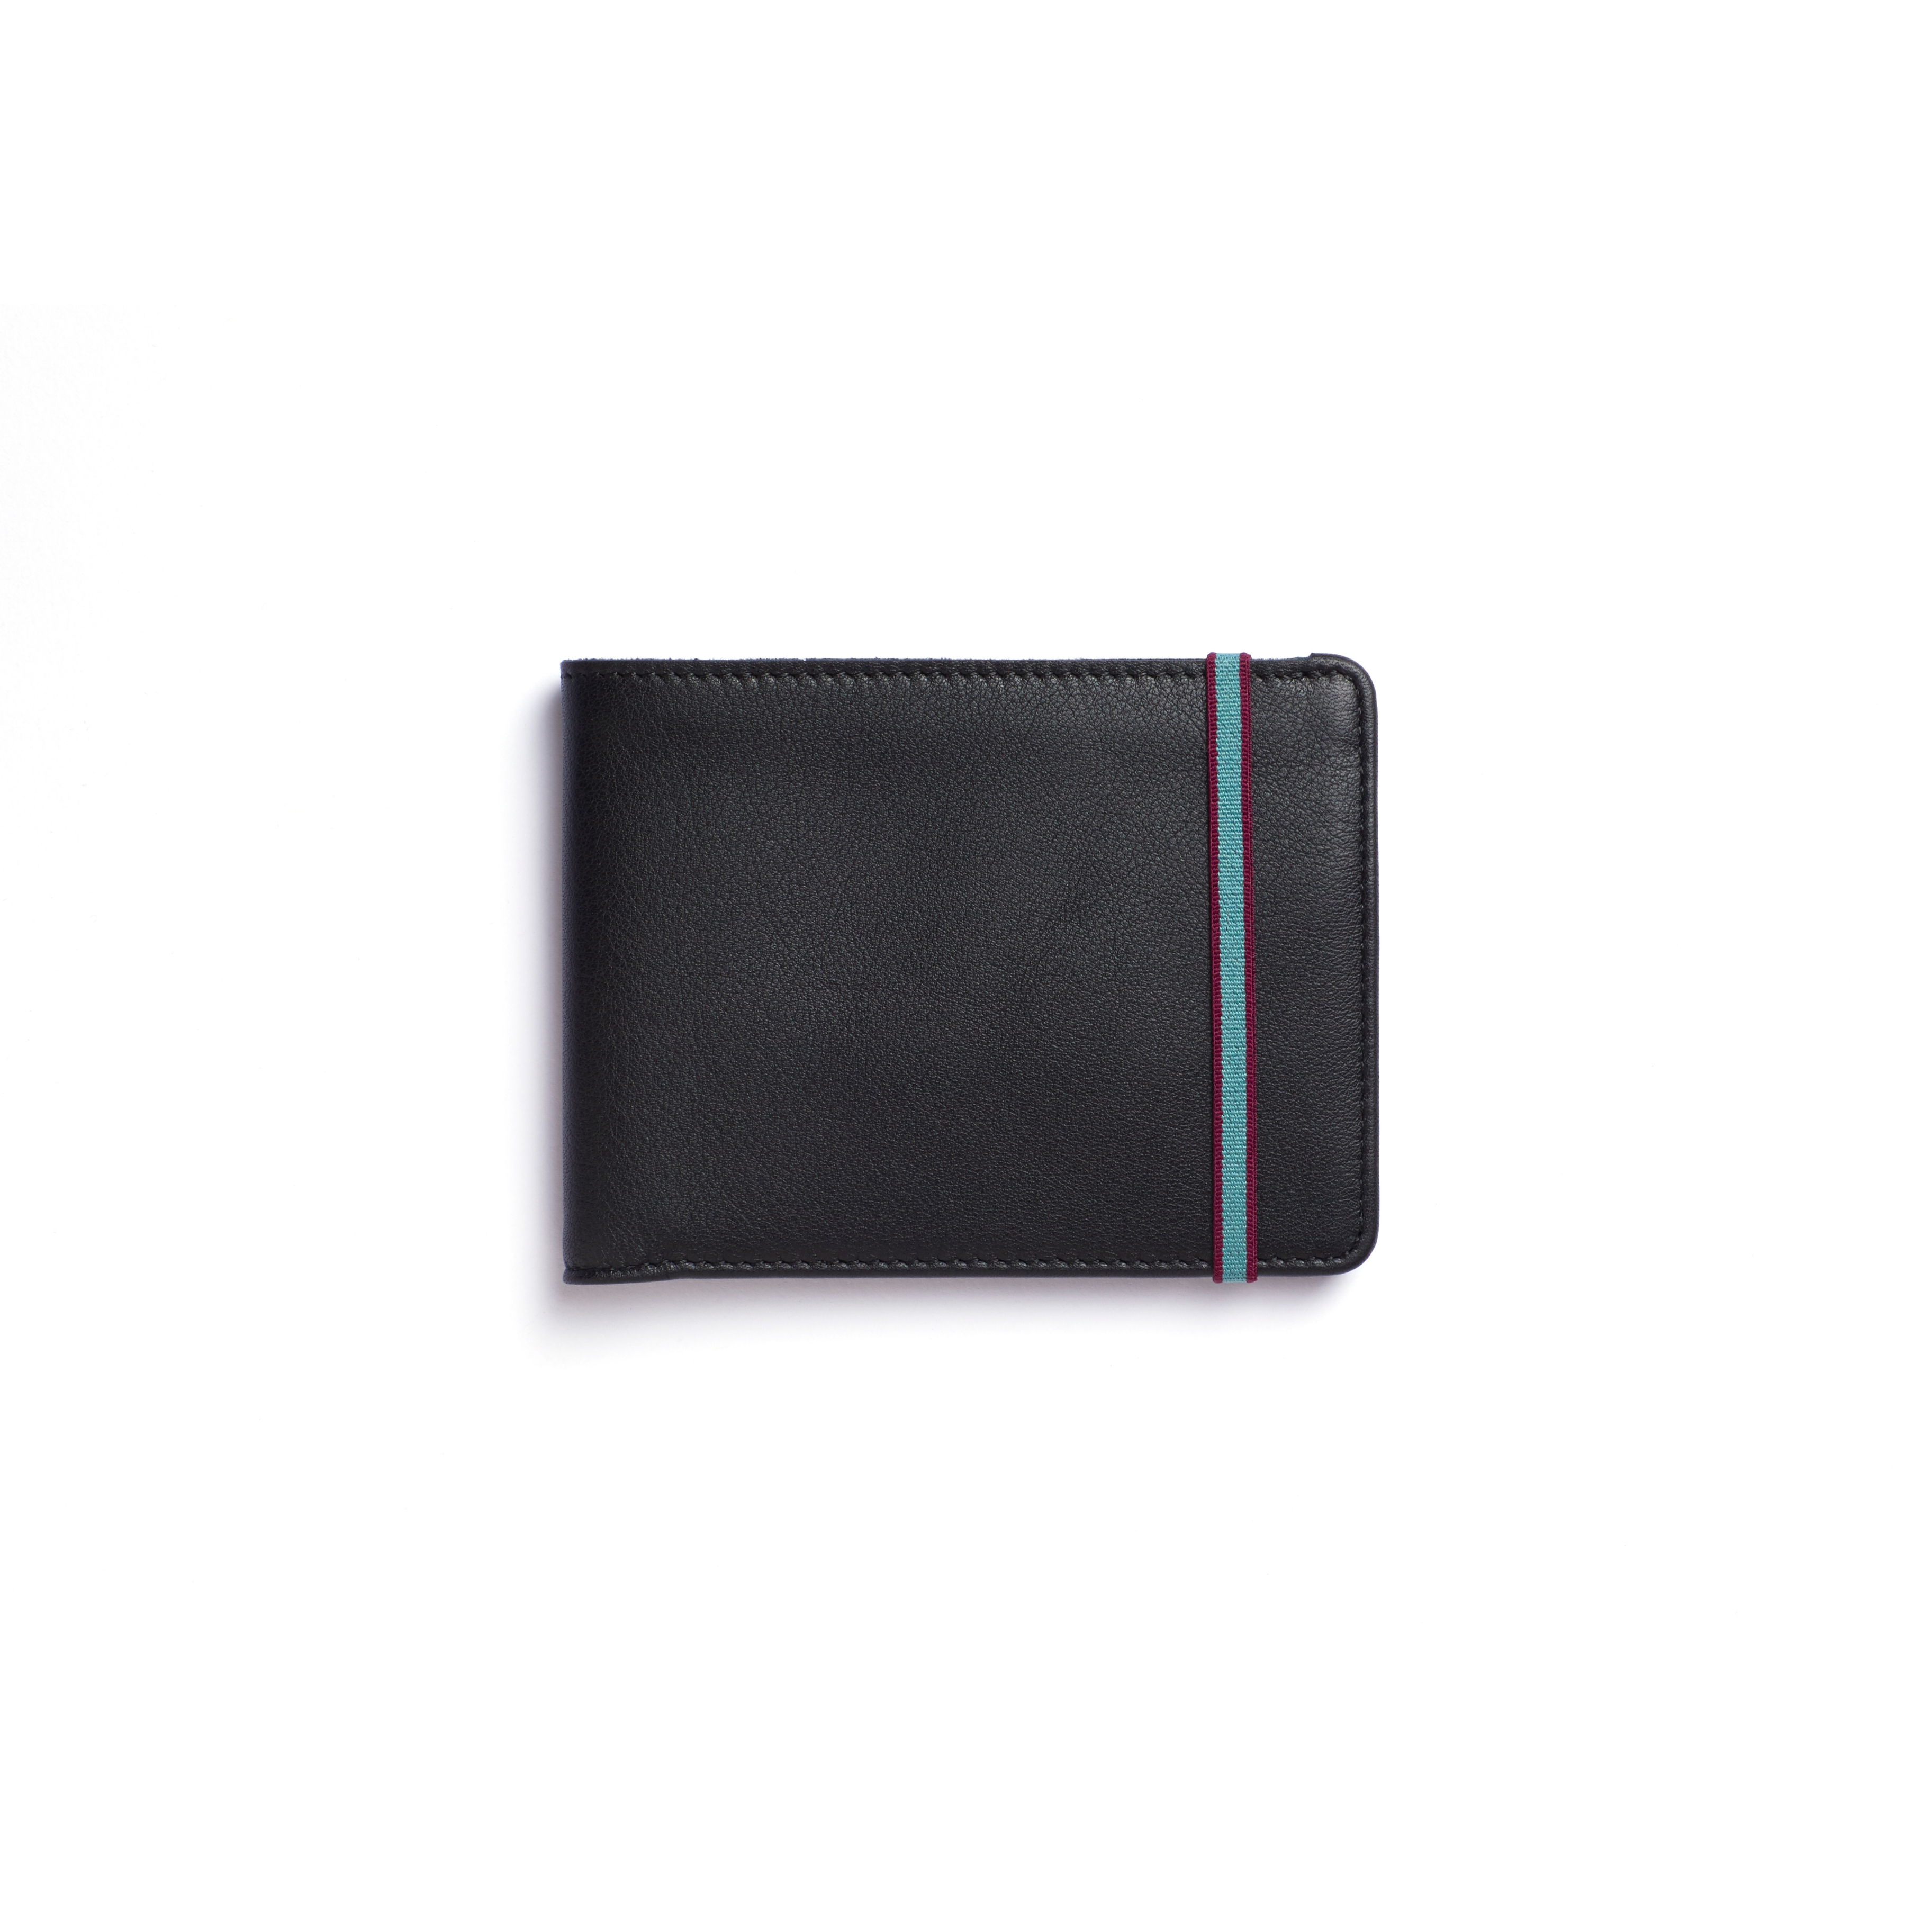 Carré Royal - Wholesale Wallet - Unisex - Black Minimalist Wallet on Faire.com